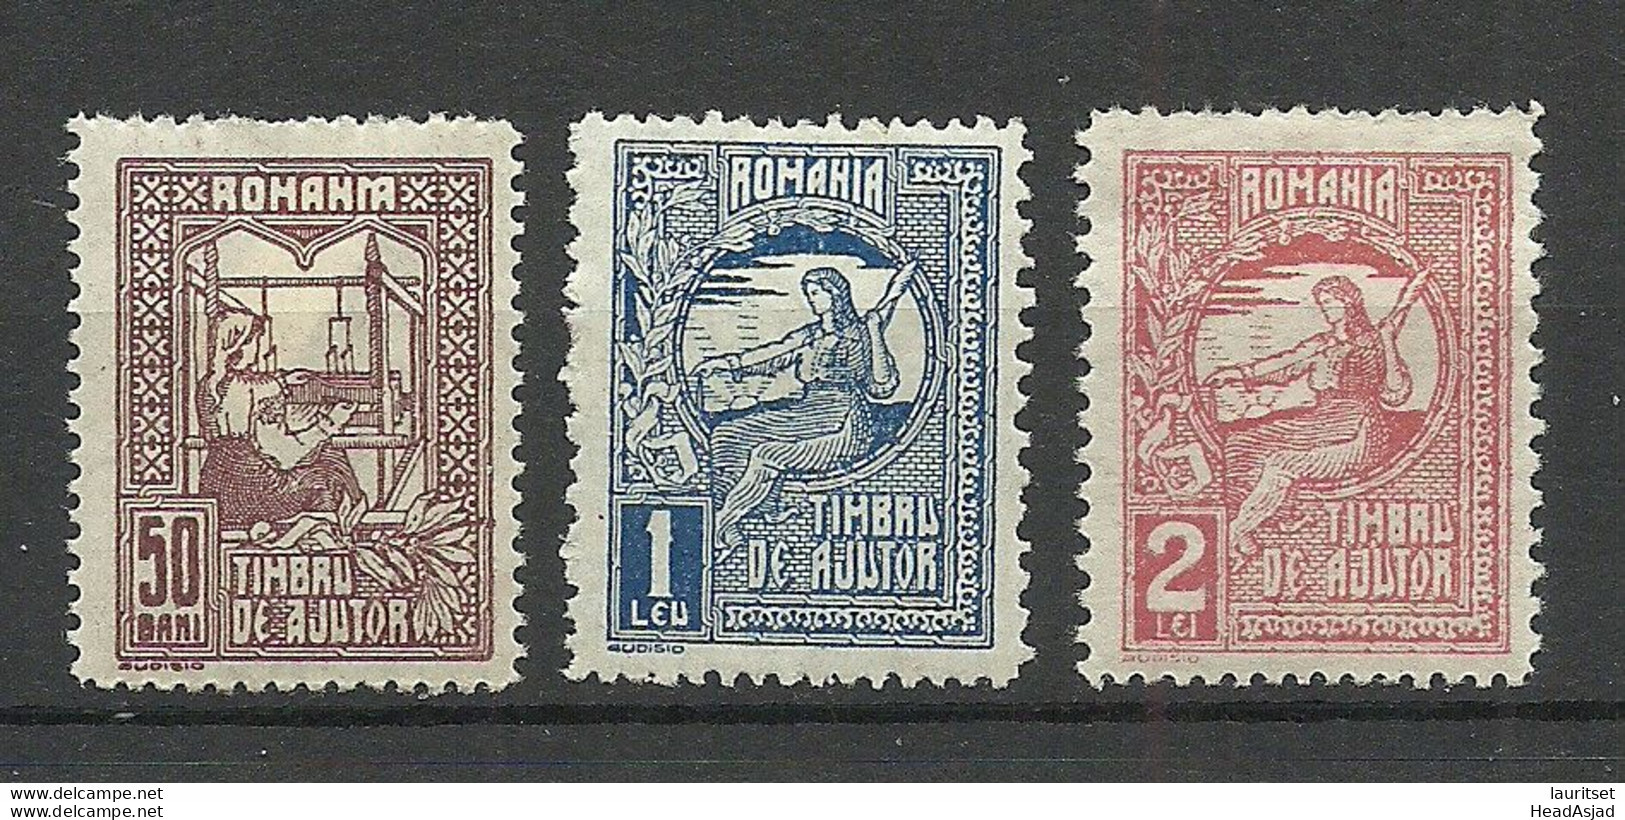 ROMANIA Rumänien 1918 * Timbru De Ajutor Tax Taxe Gebührenmarken - Revenue Stamps